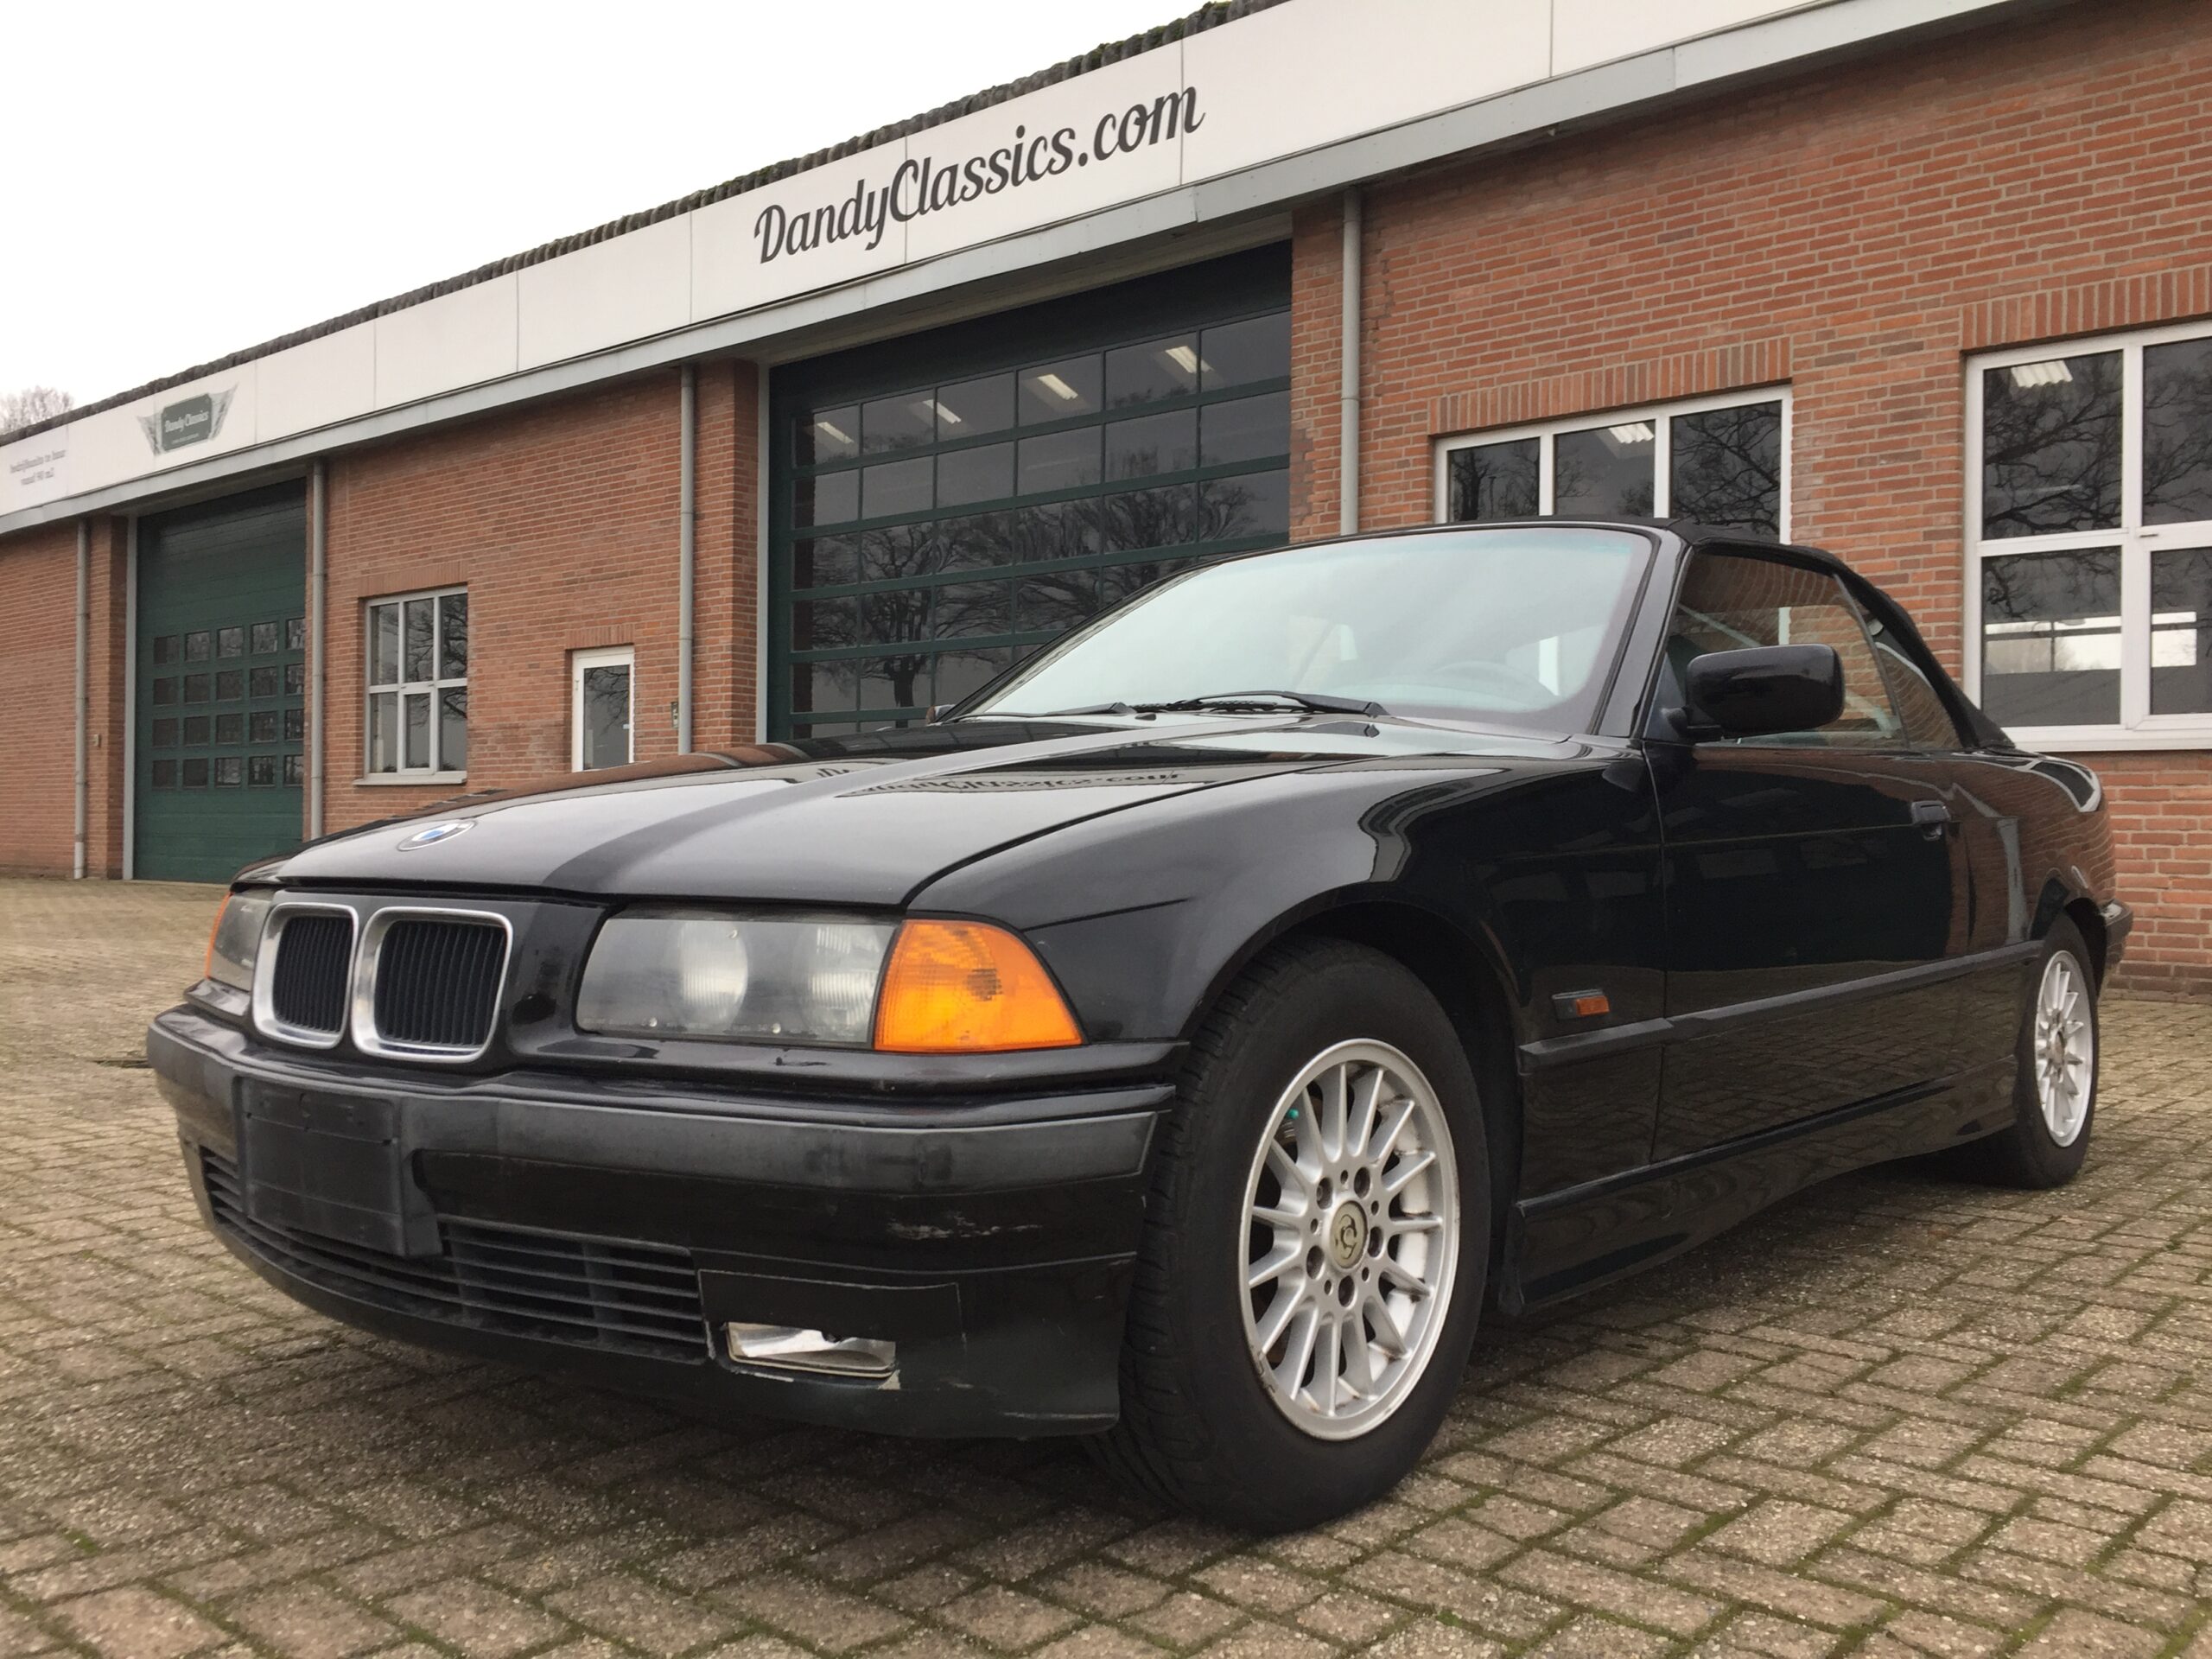 Voel me slecht Verhoogd incompleet 1995 BMW E36 328i convertible - Dandy Classics